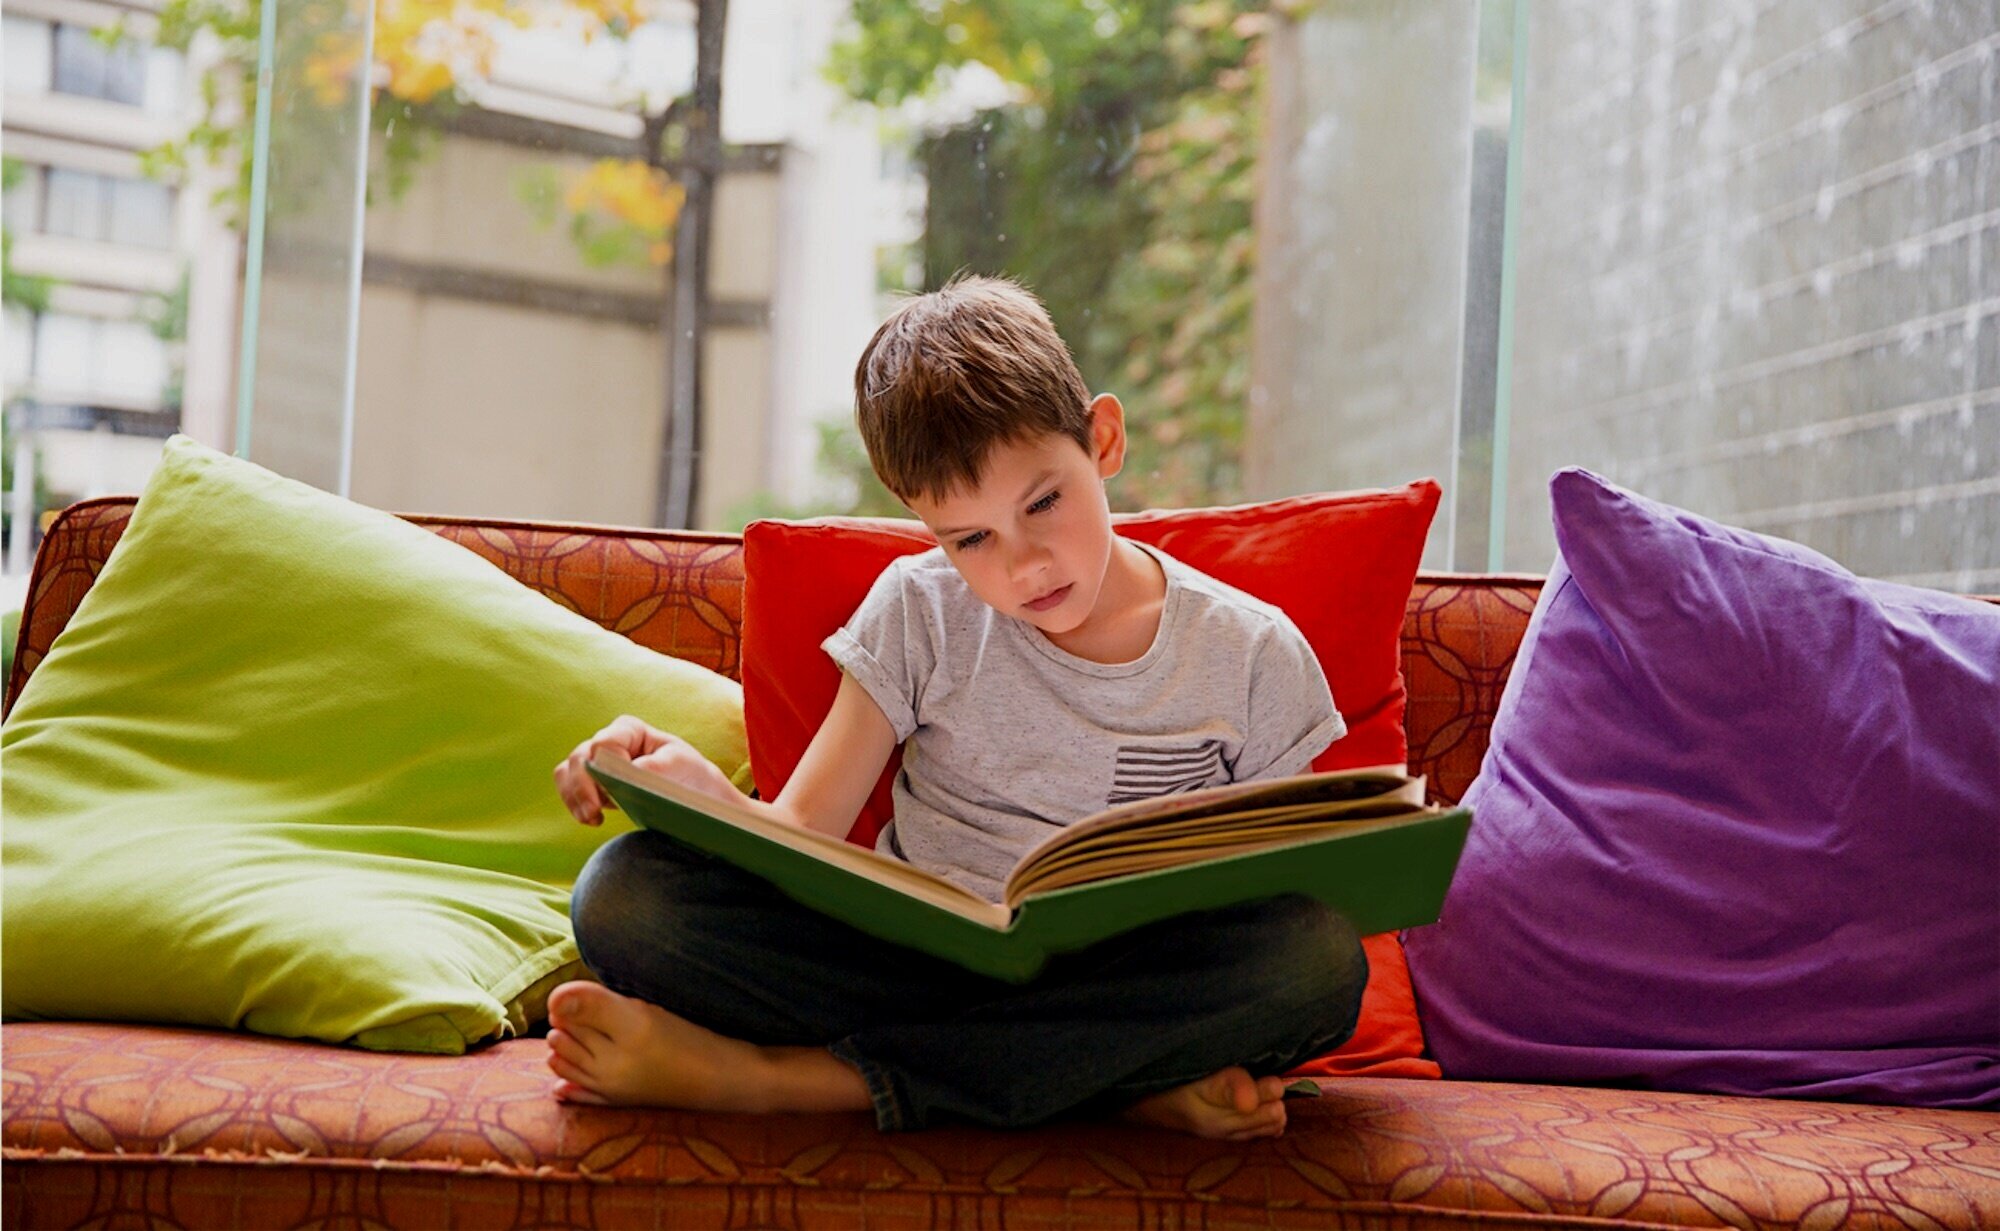 He the book at home. Чтение книги на диване изображения. Boy read book. Read at Home. Reading book at Home.